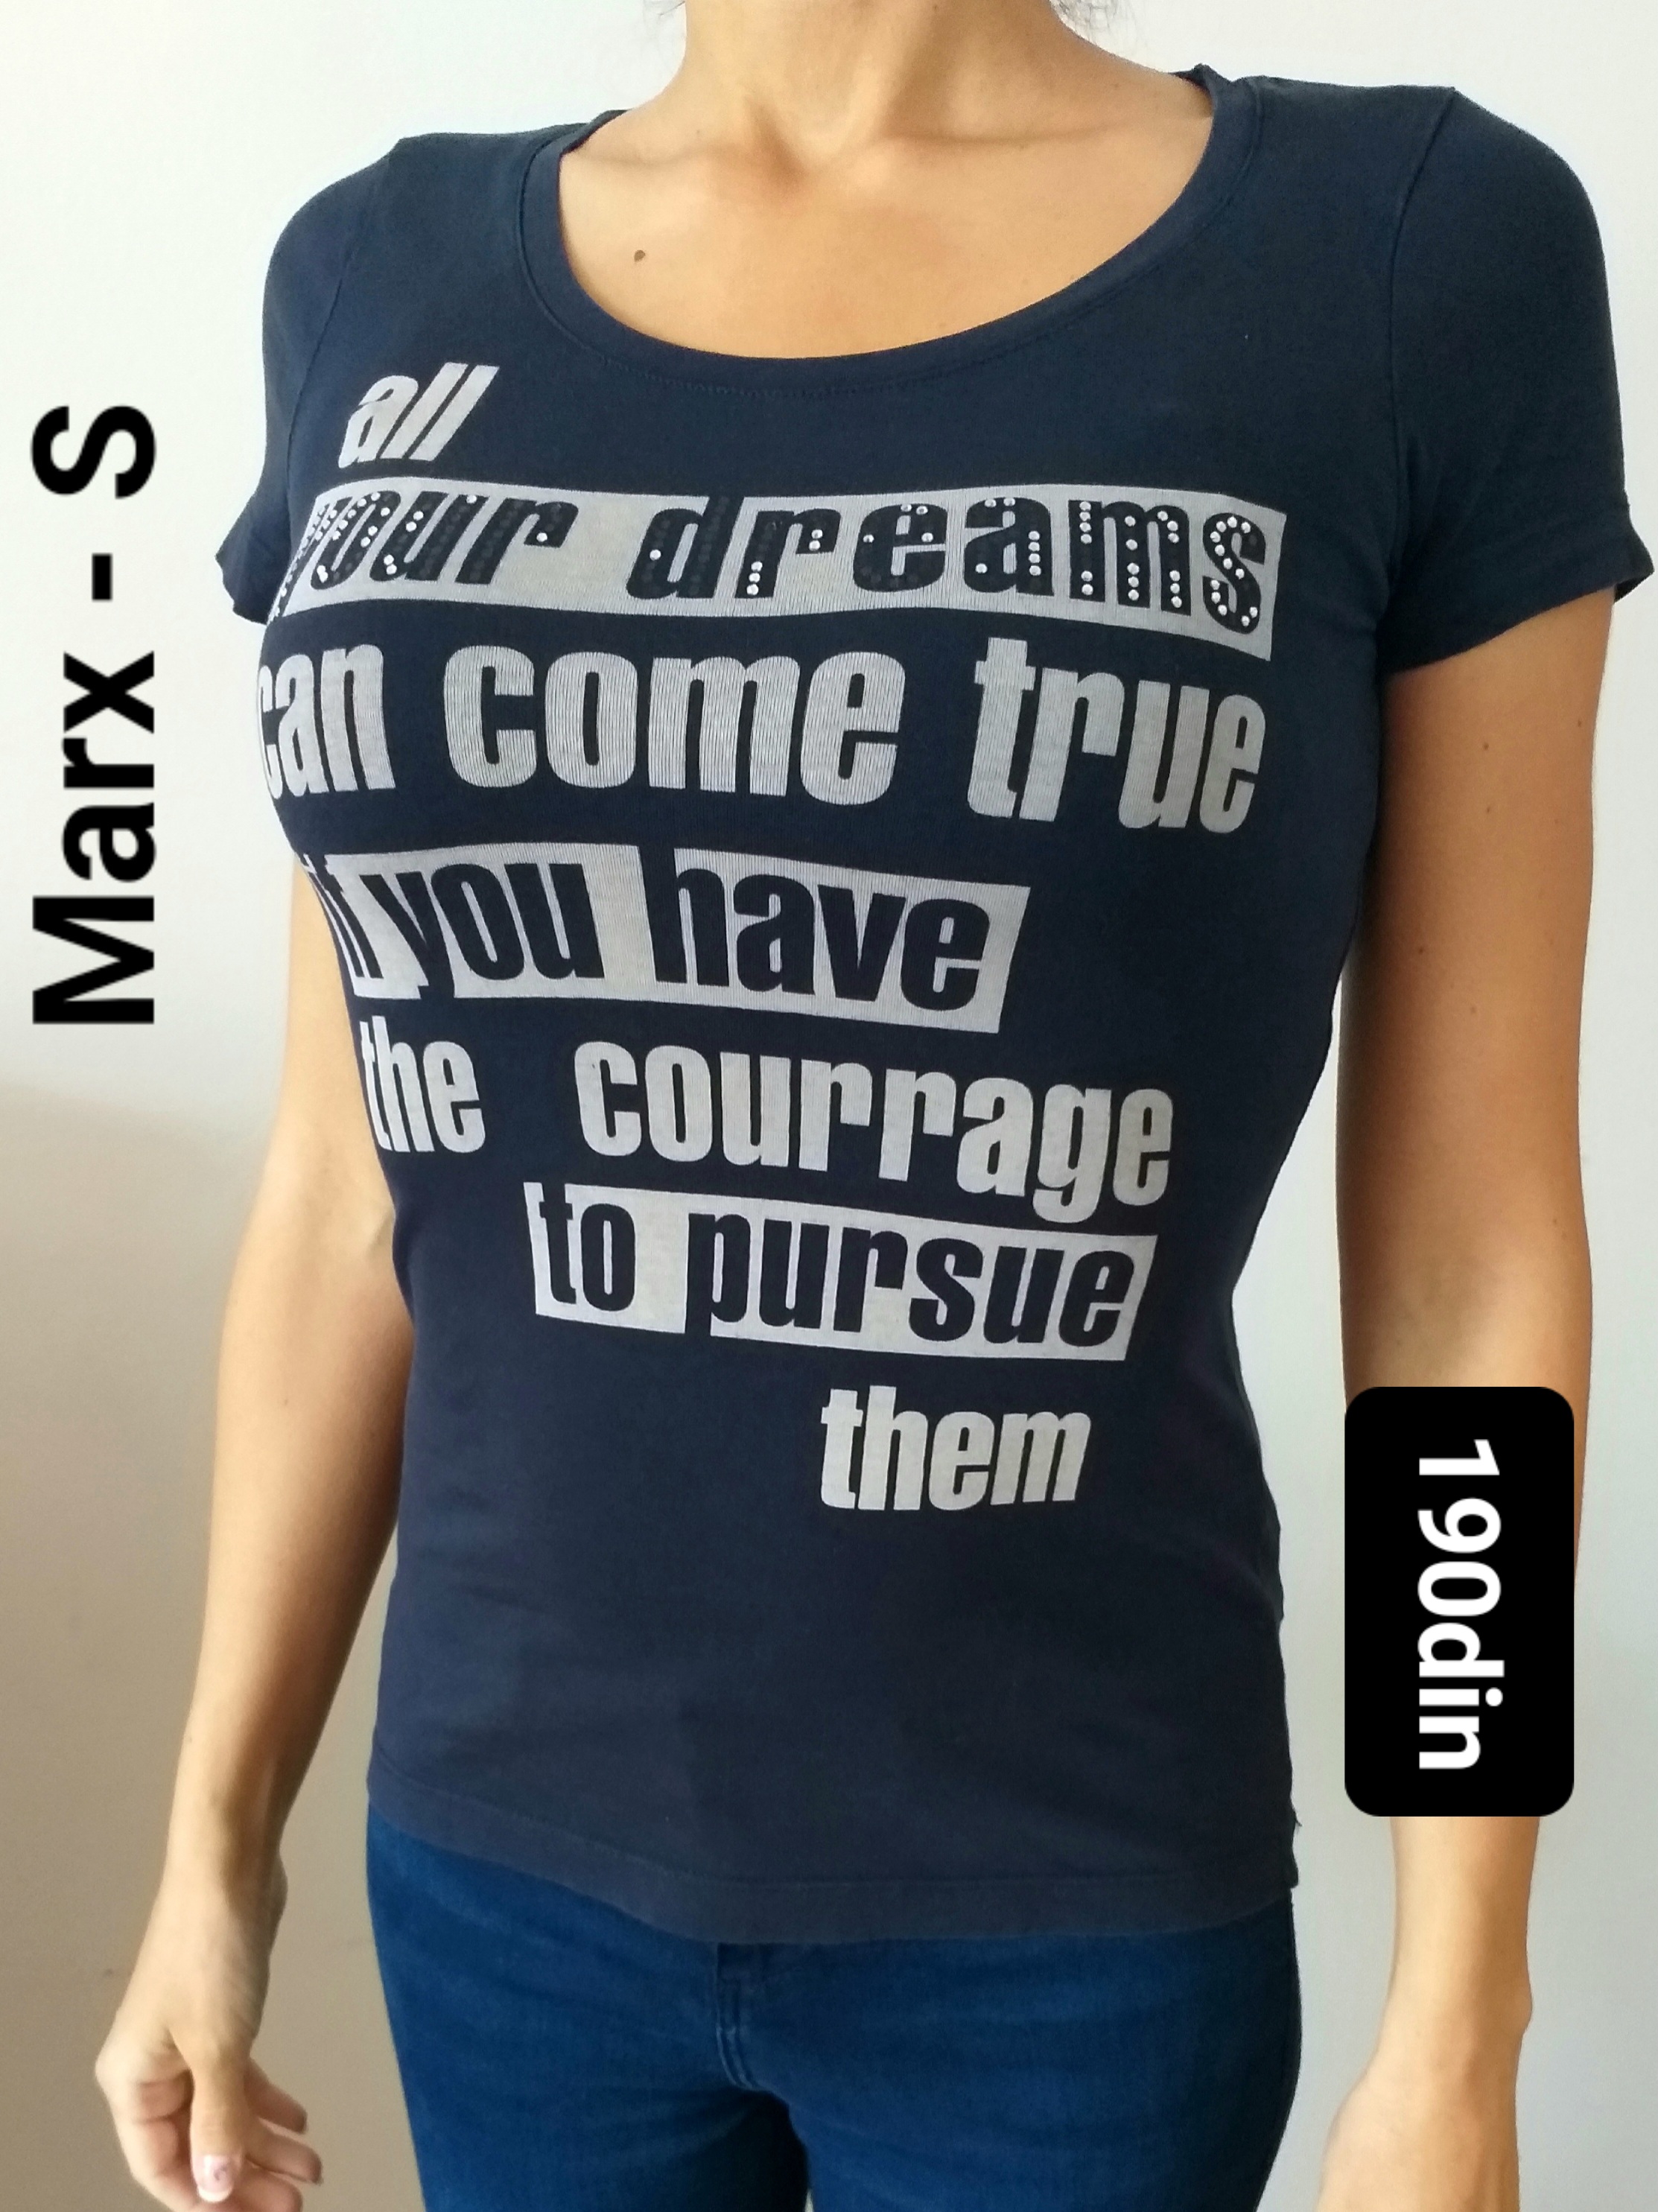 Marx ženska majica teget S/36